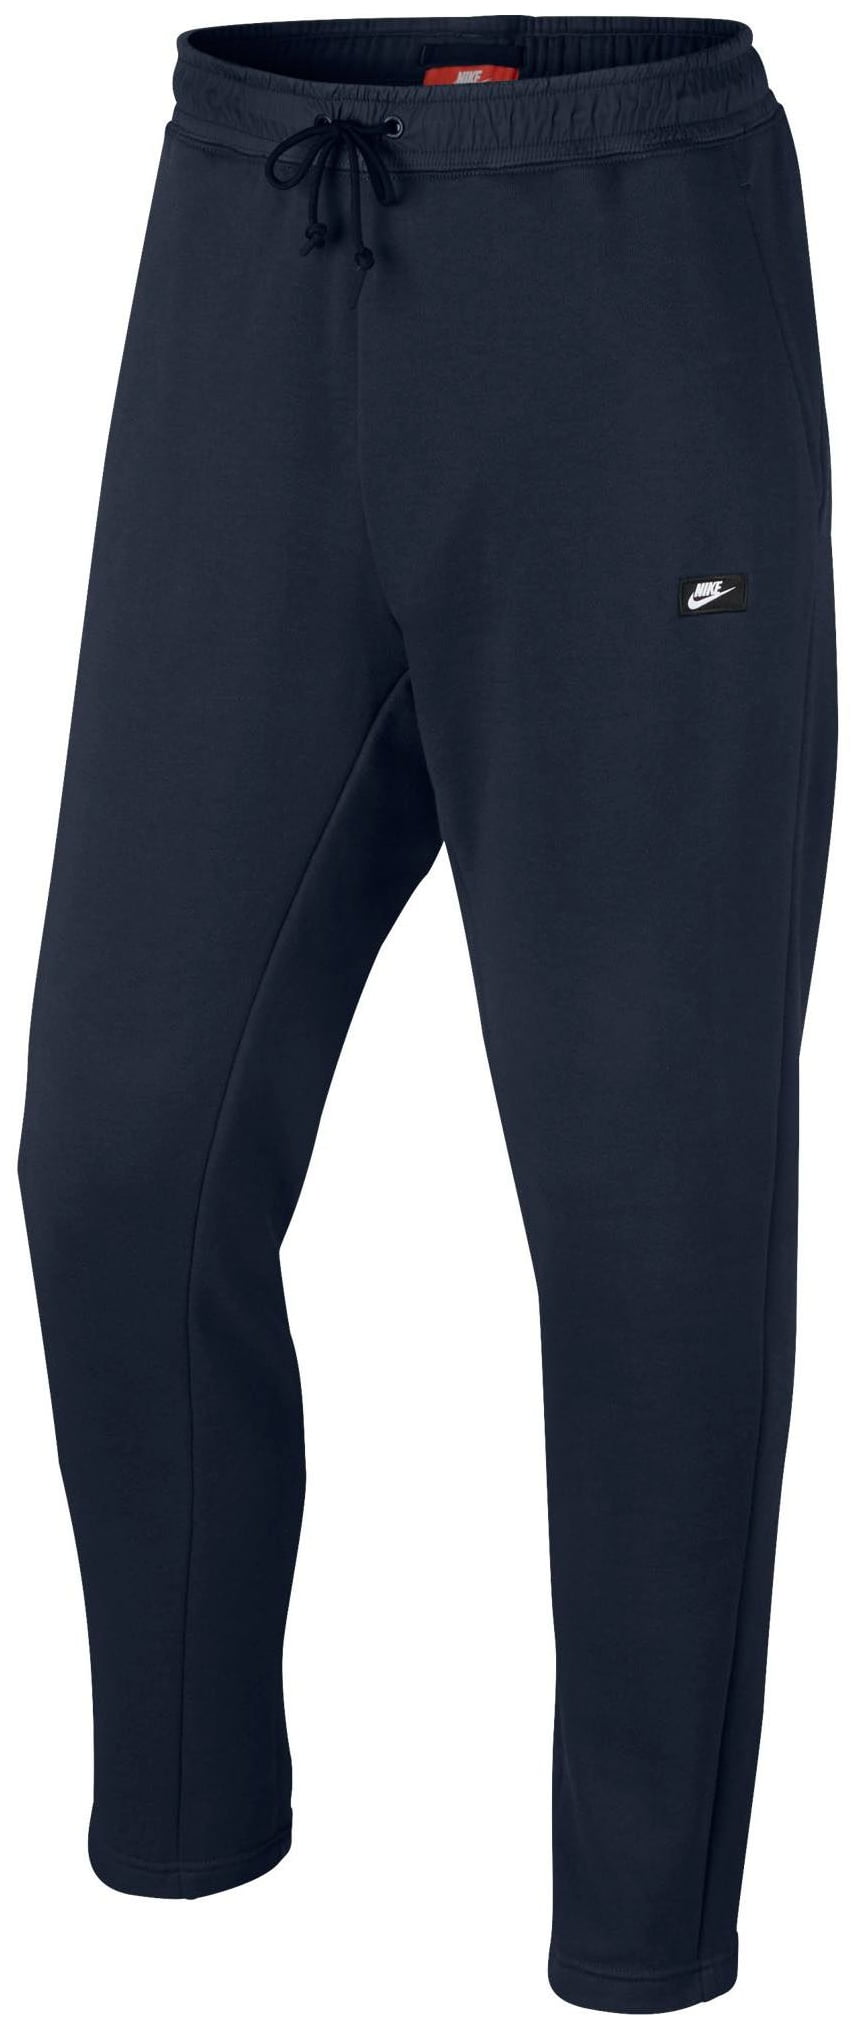 nike men's sportswear modern pants - black/black - size xl - Walmart.com